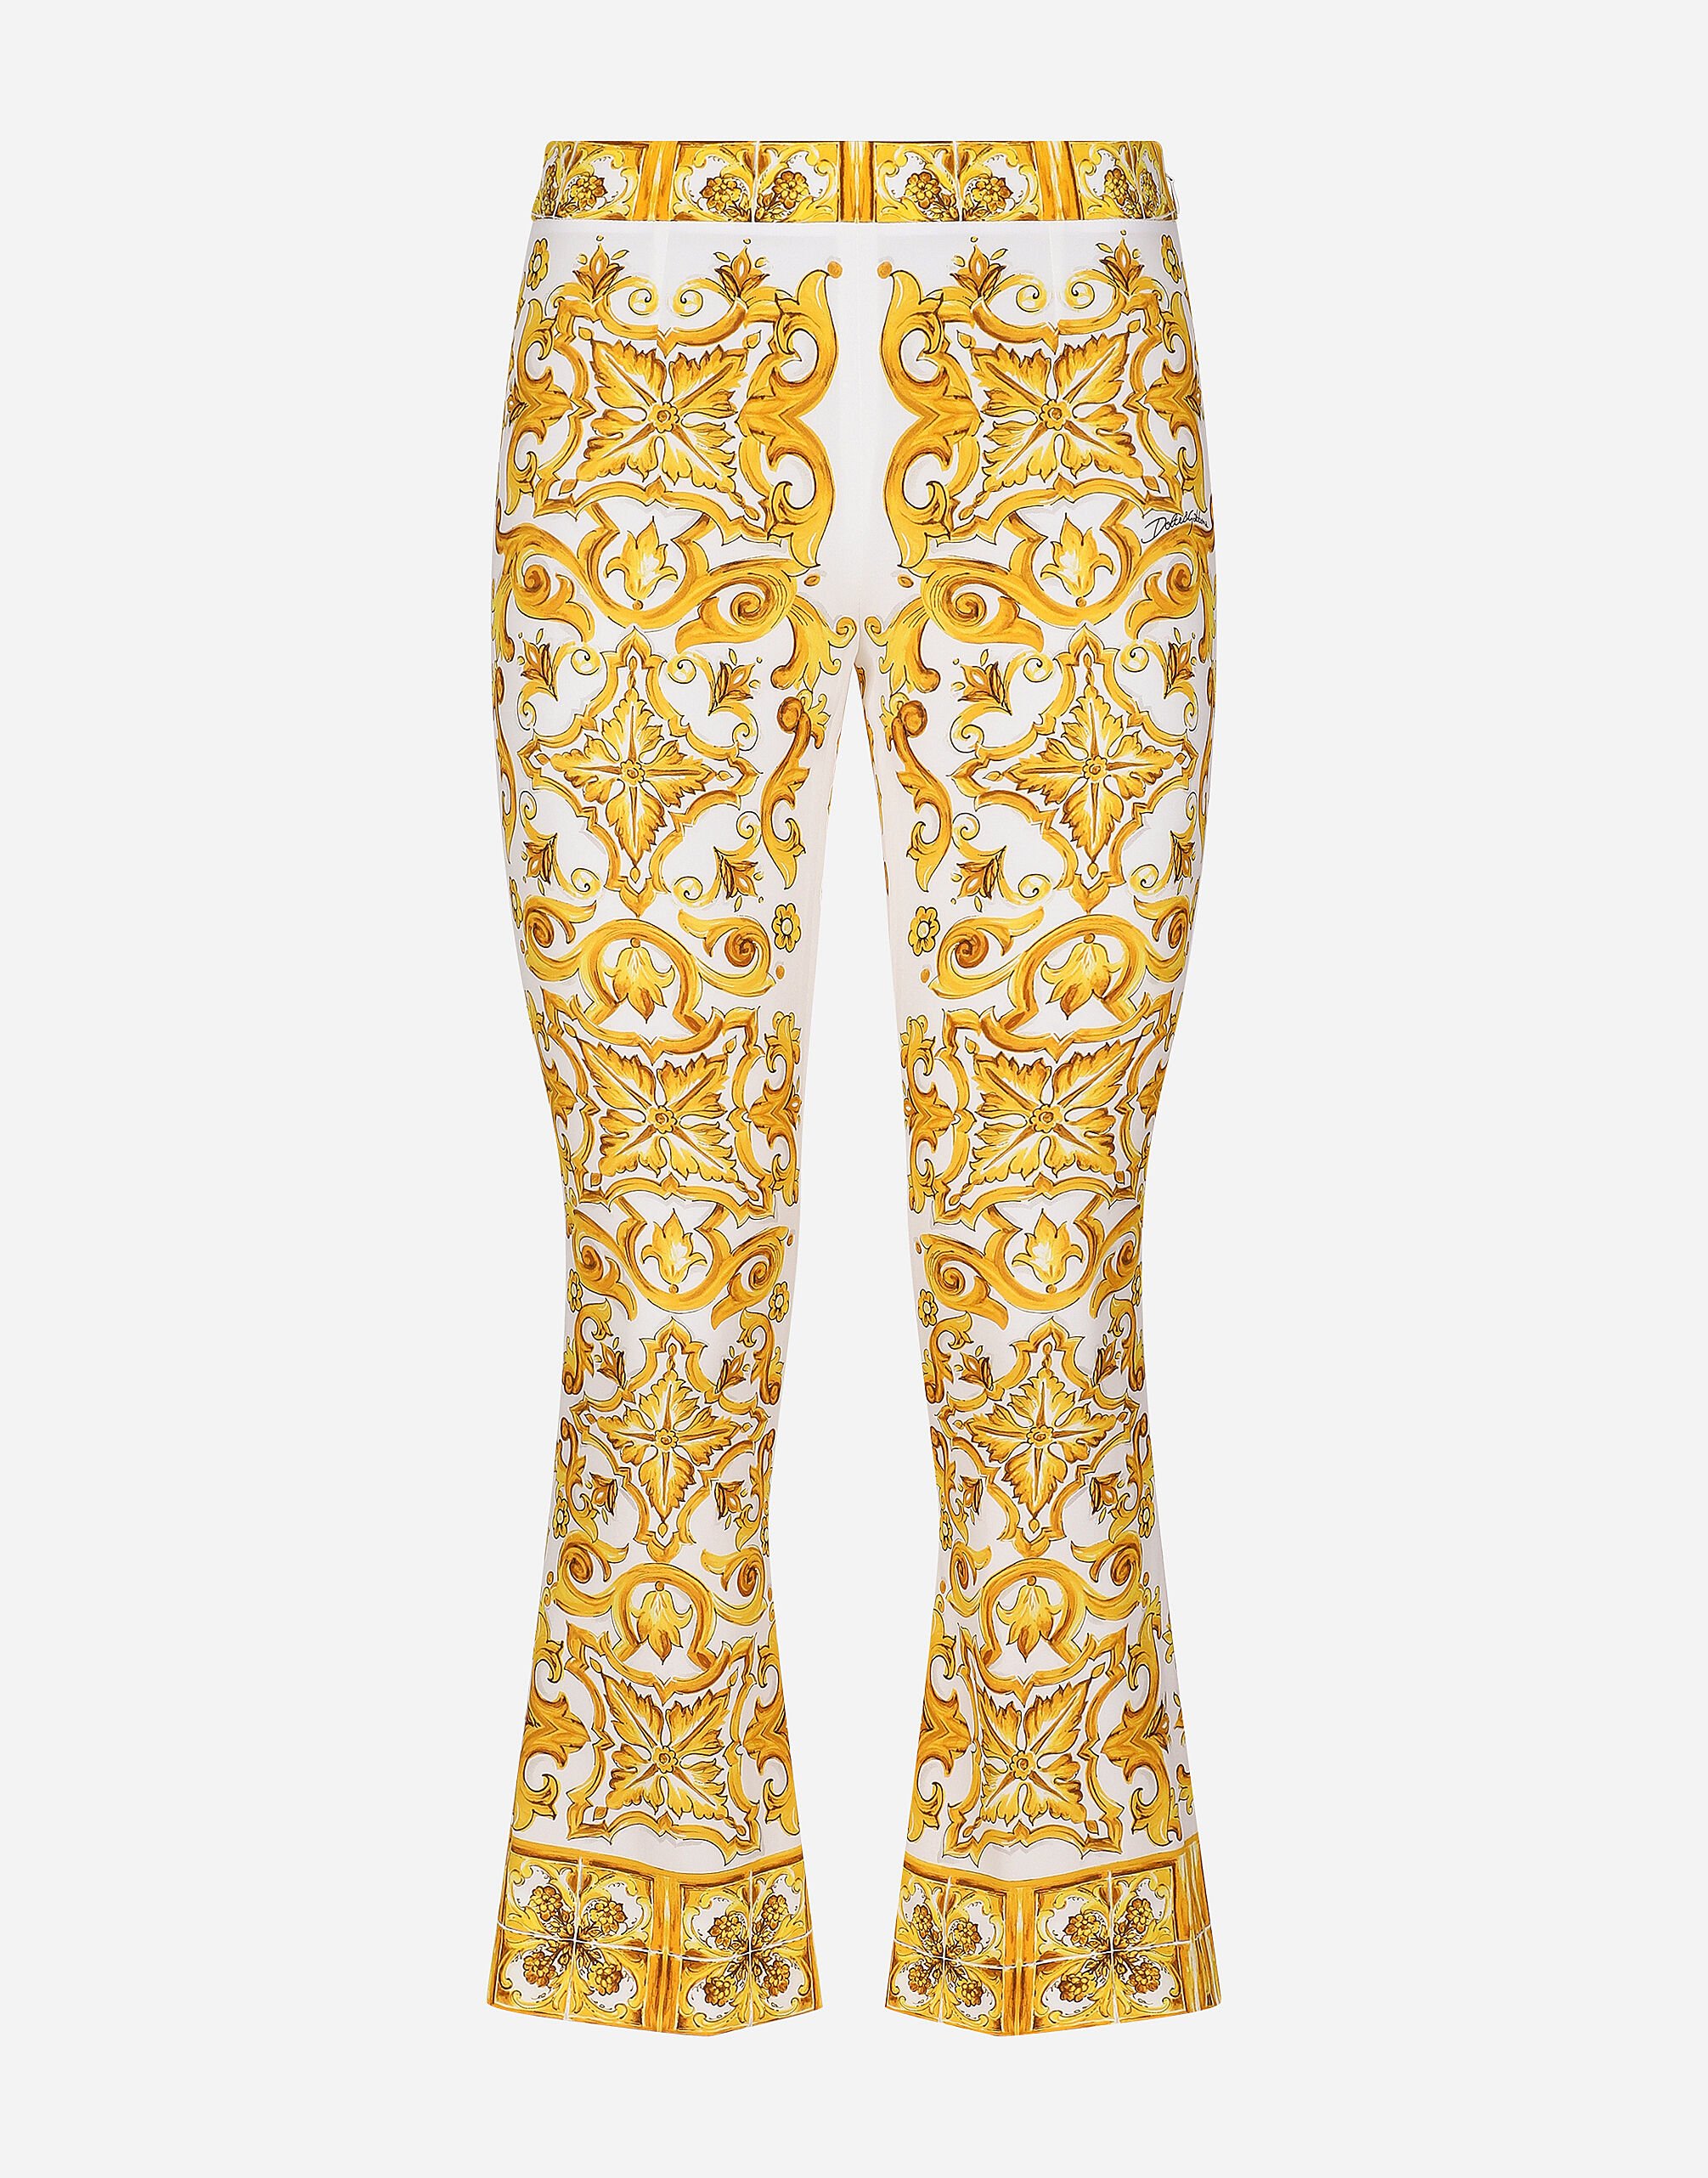 Dolce & Gabbana Pantalón trompeta en charmeuse de seda con estampado Maiolica Imprima F6AEITHH5A1